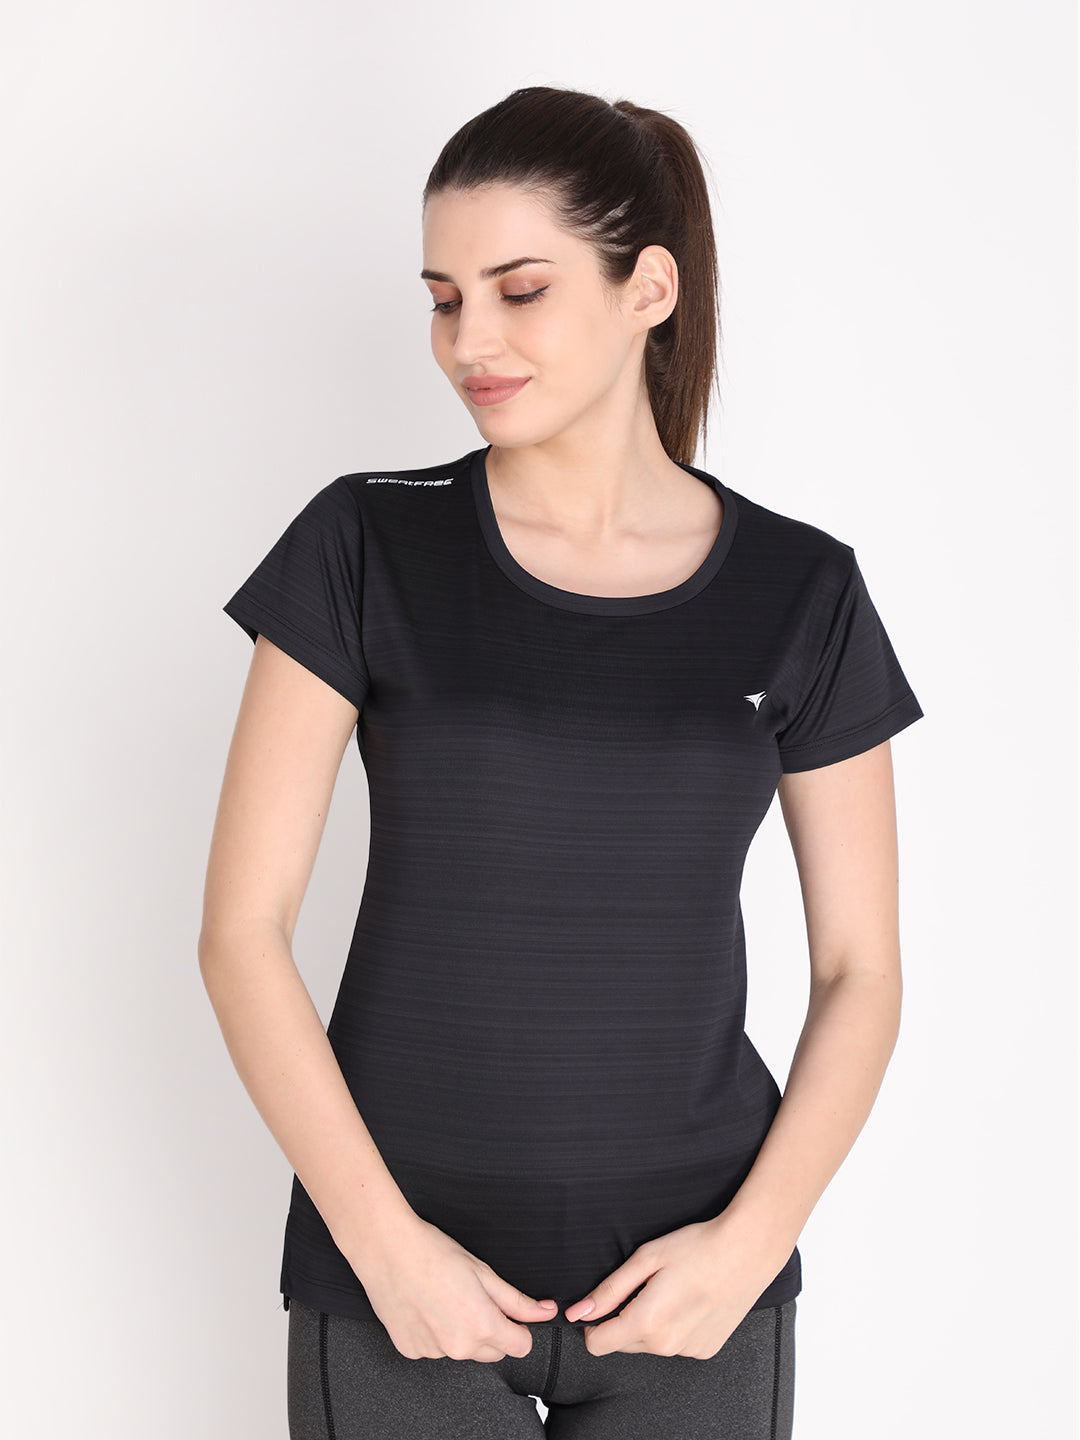 NEVA Women Round Neck Gym Sports T-Shirt- Black – Neva Clothing India